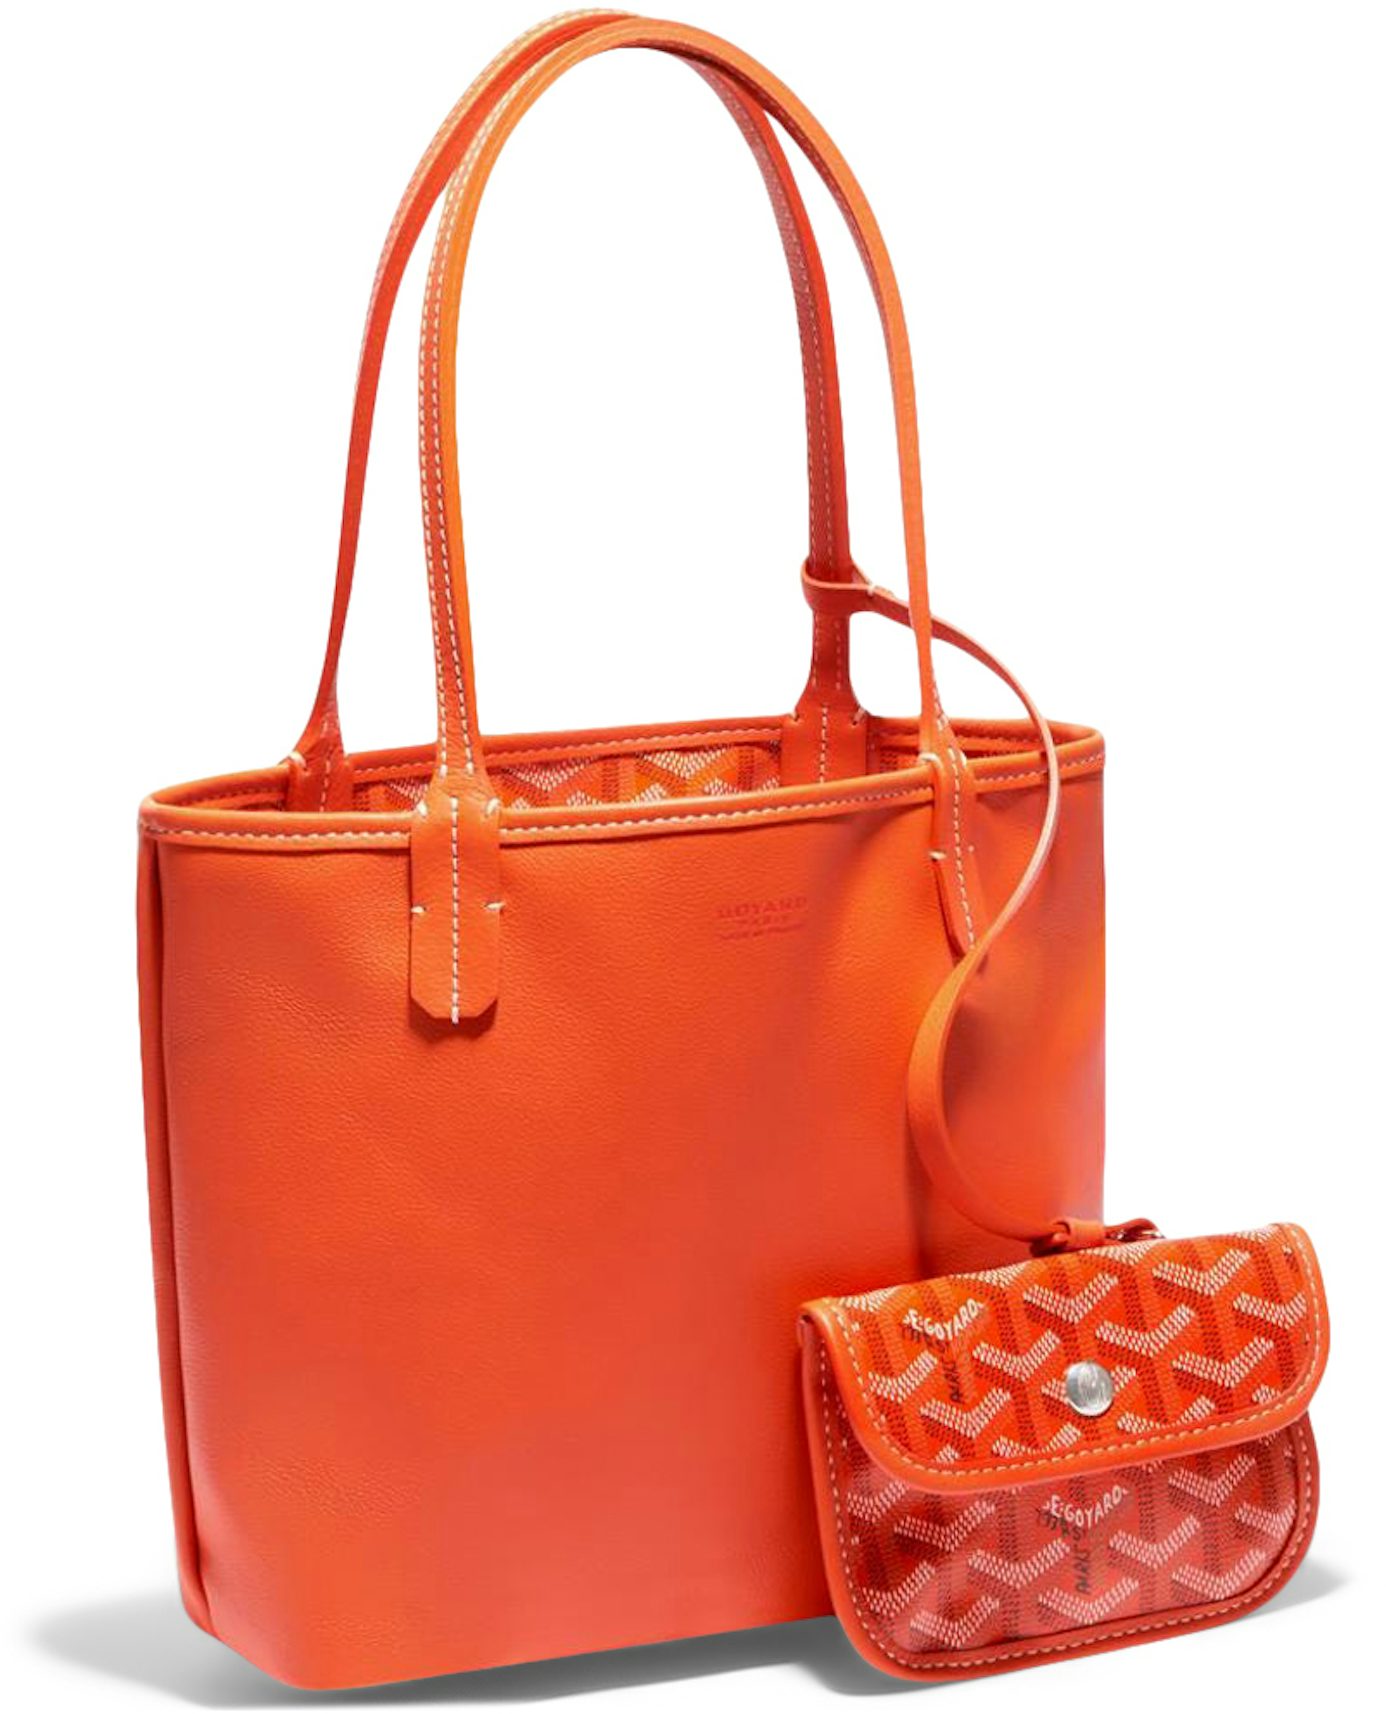 Buy Goyard Accessories - Color Orange - StockX